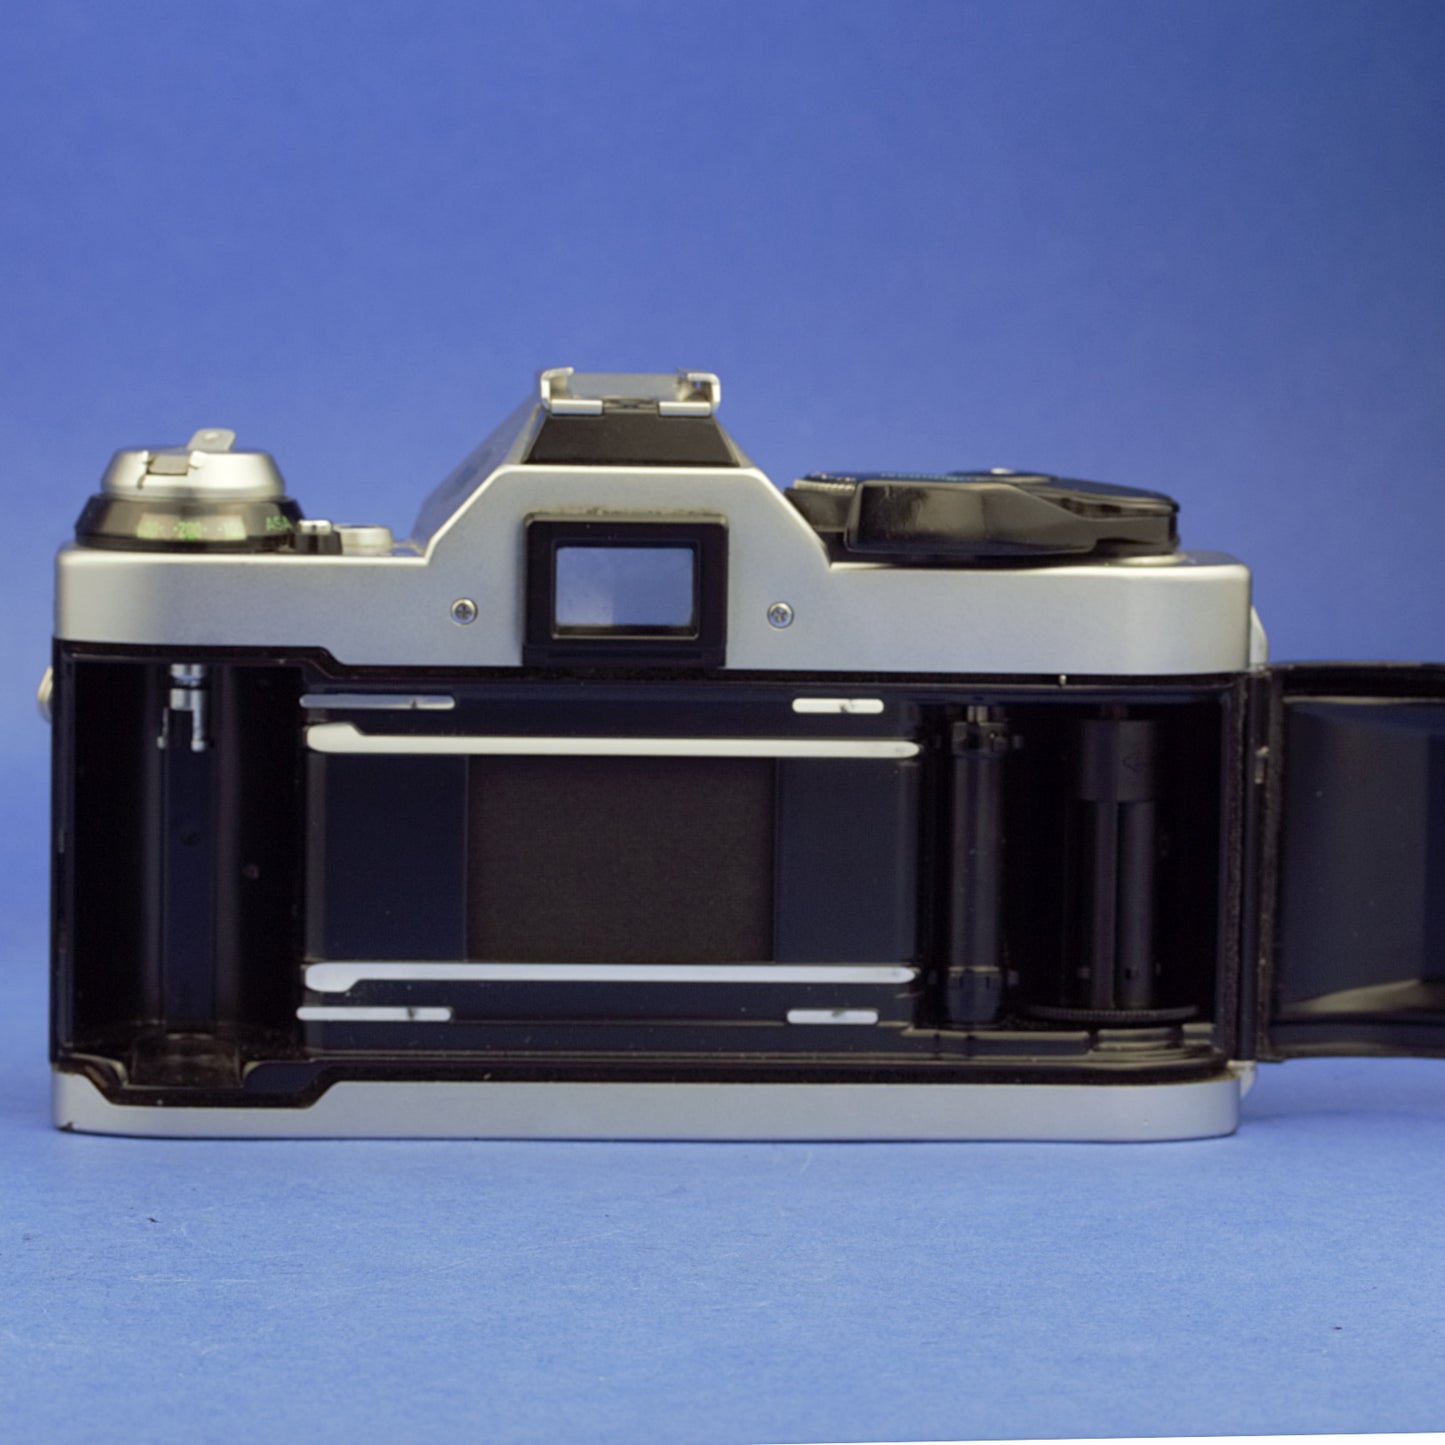 Canon AE-1 Program Film Camera Body For Parts